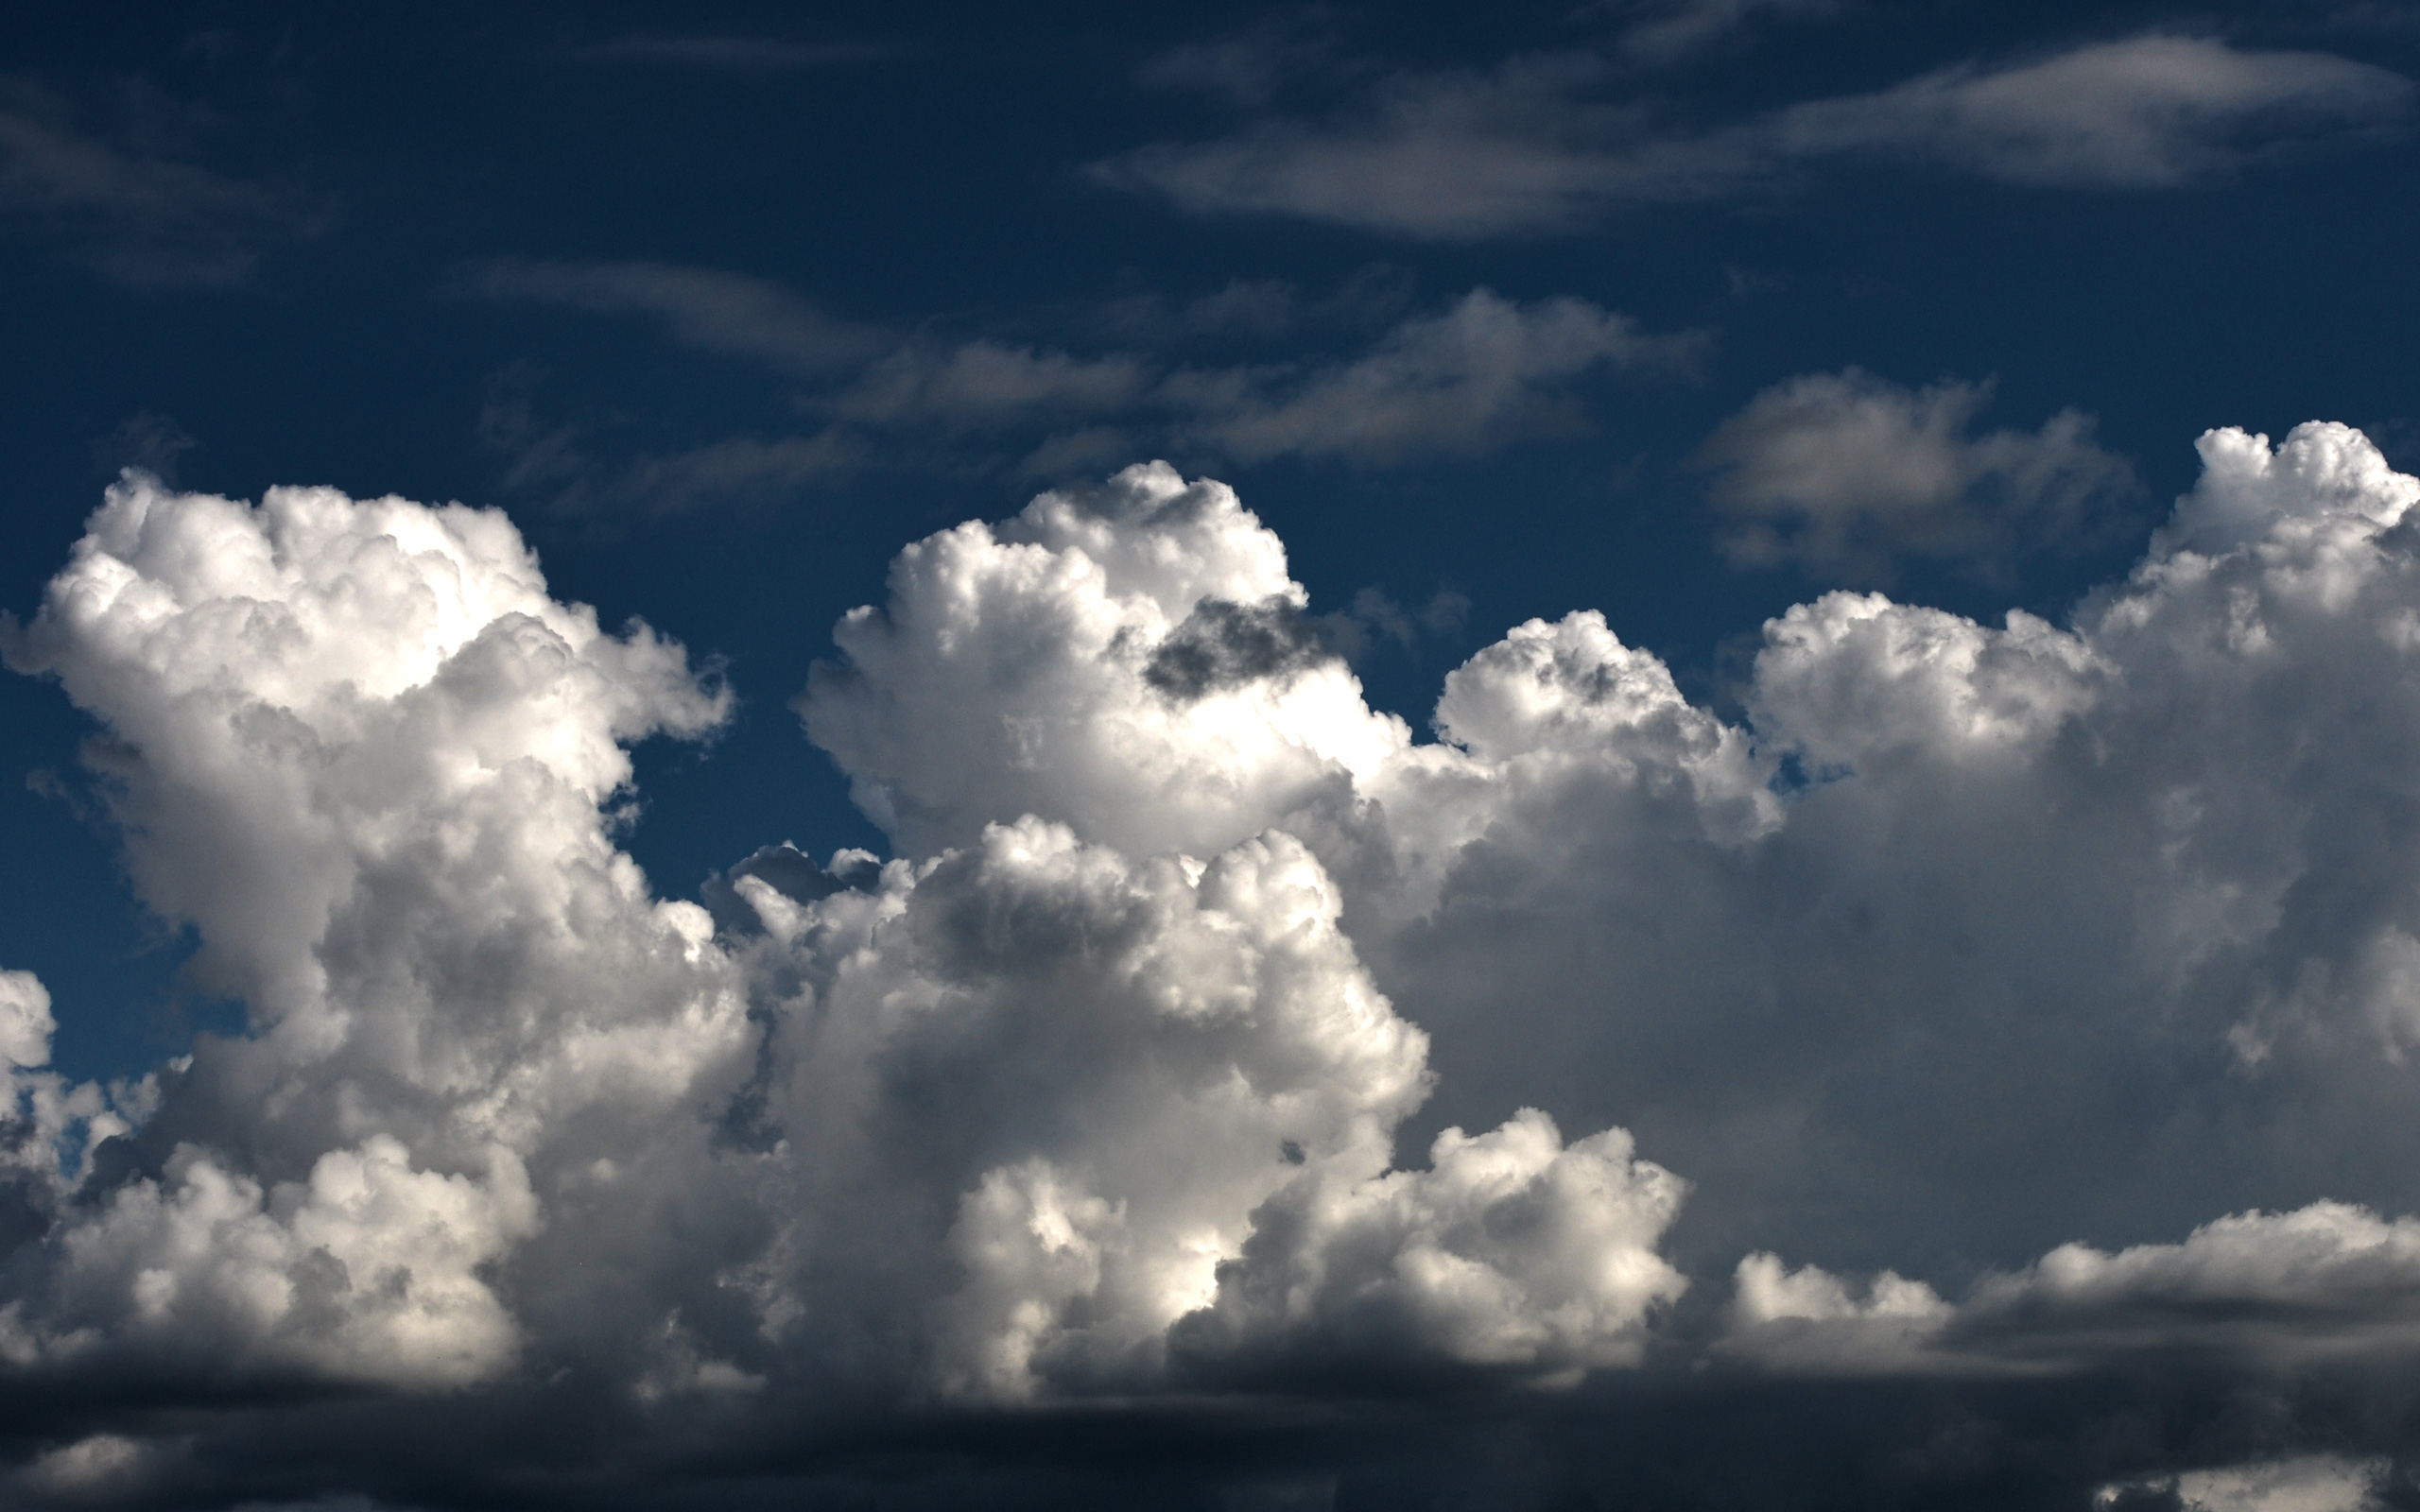 Météo : des nuages venant de l'est inluenceront le temps local à partir de cet après-midi